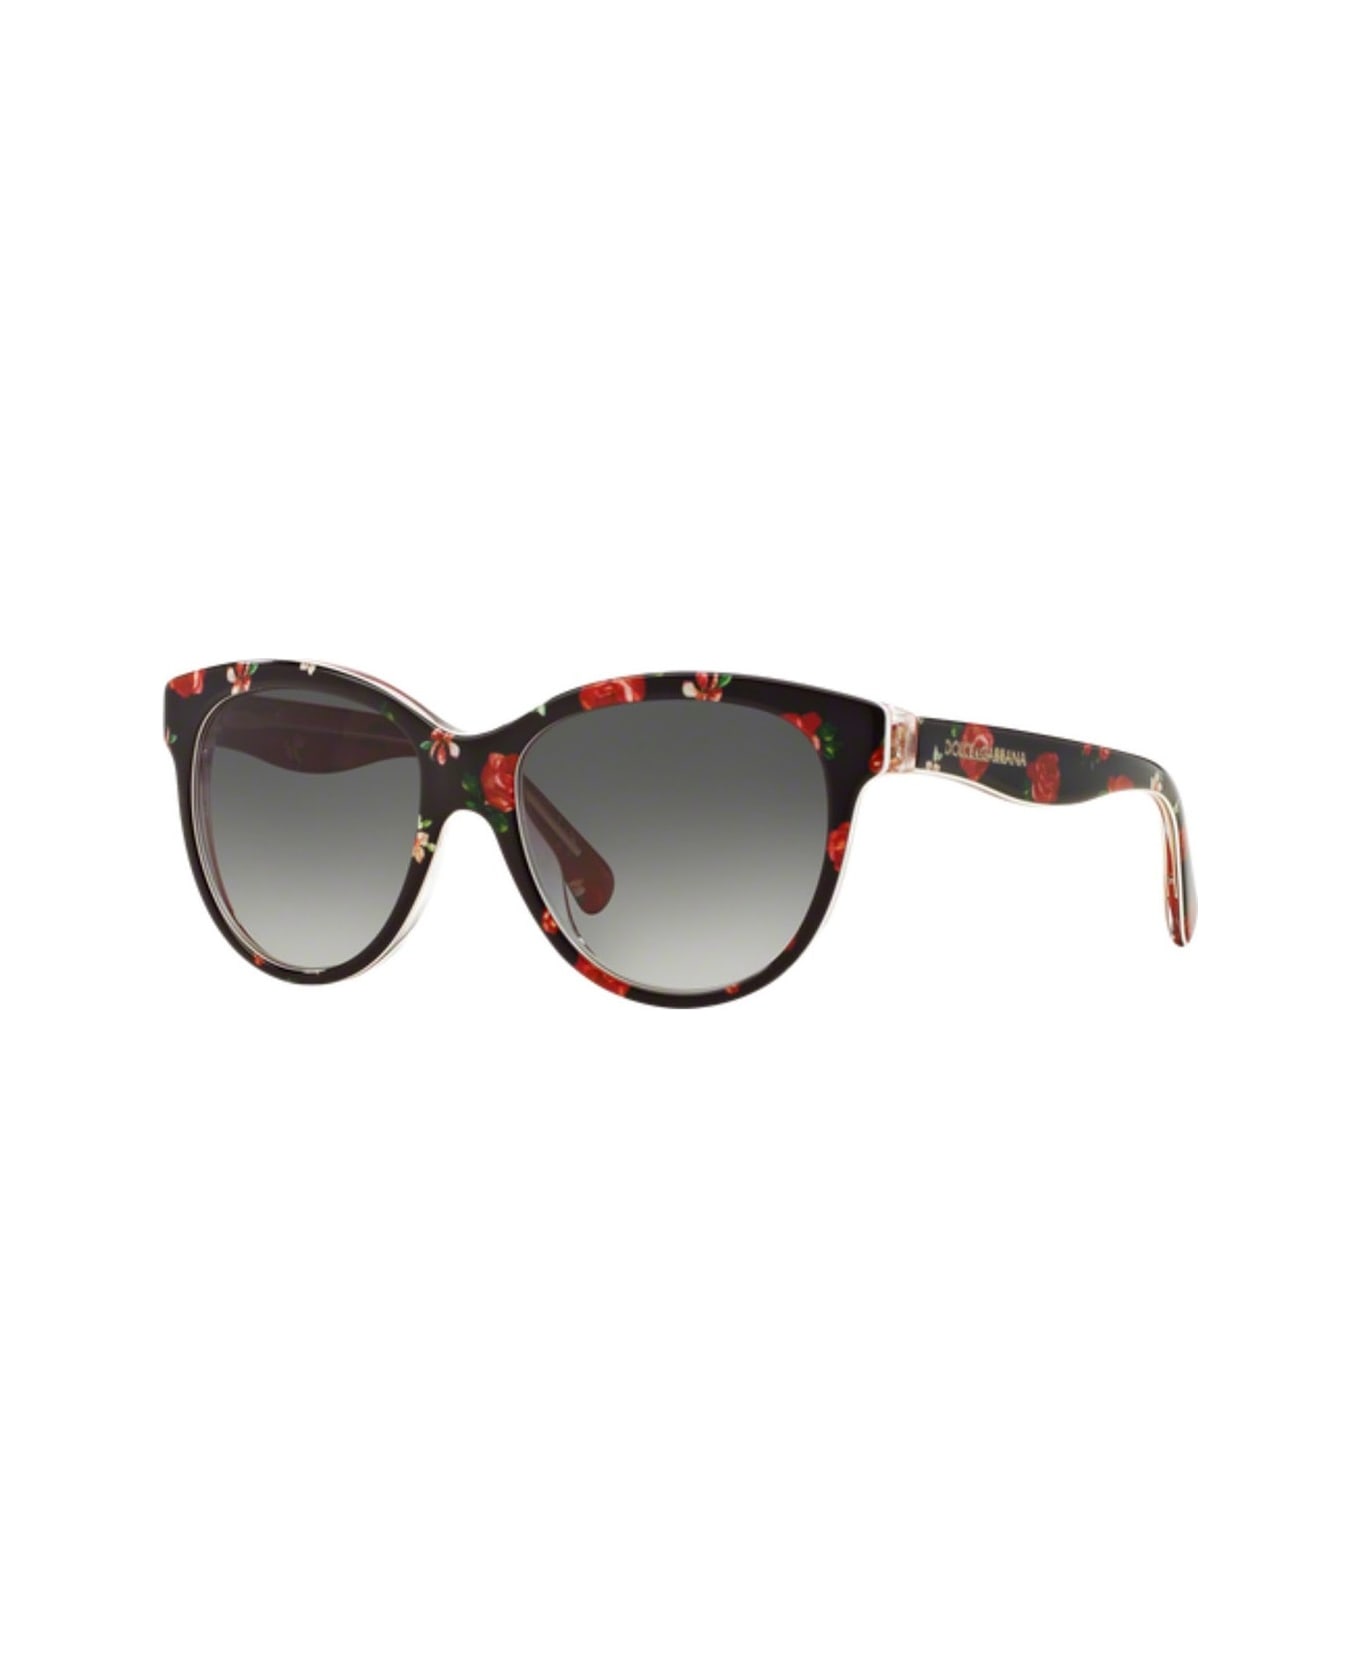 Prada's cat-eye sunglasses Eyewear Dg4176 Junior Sunglasses - Nero